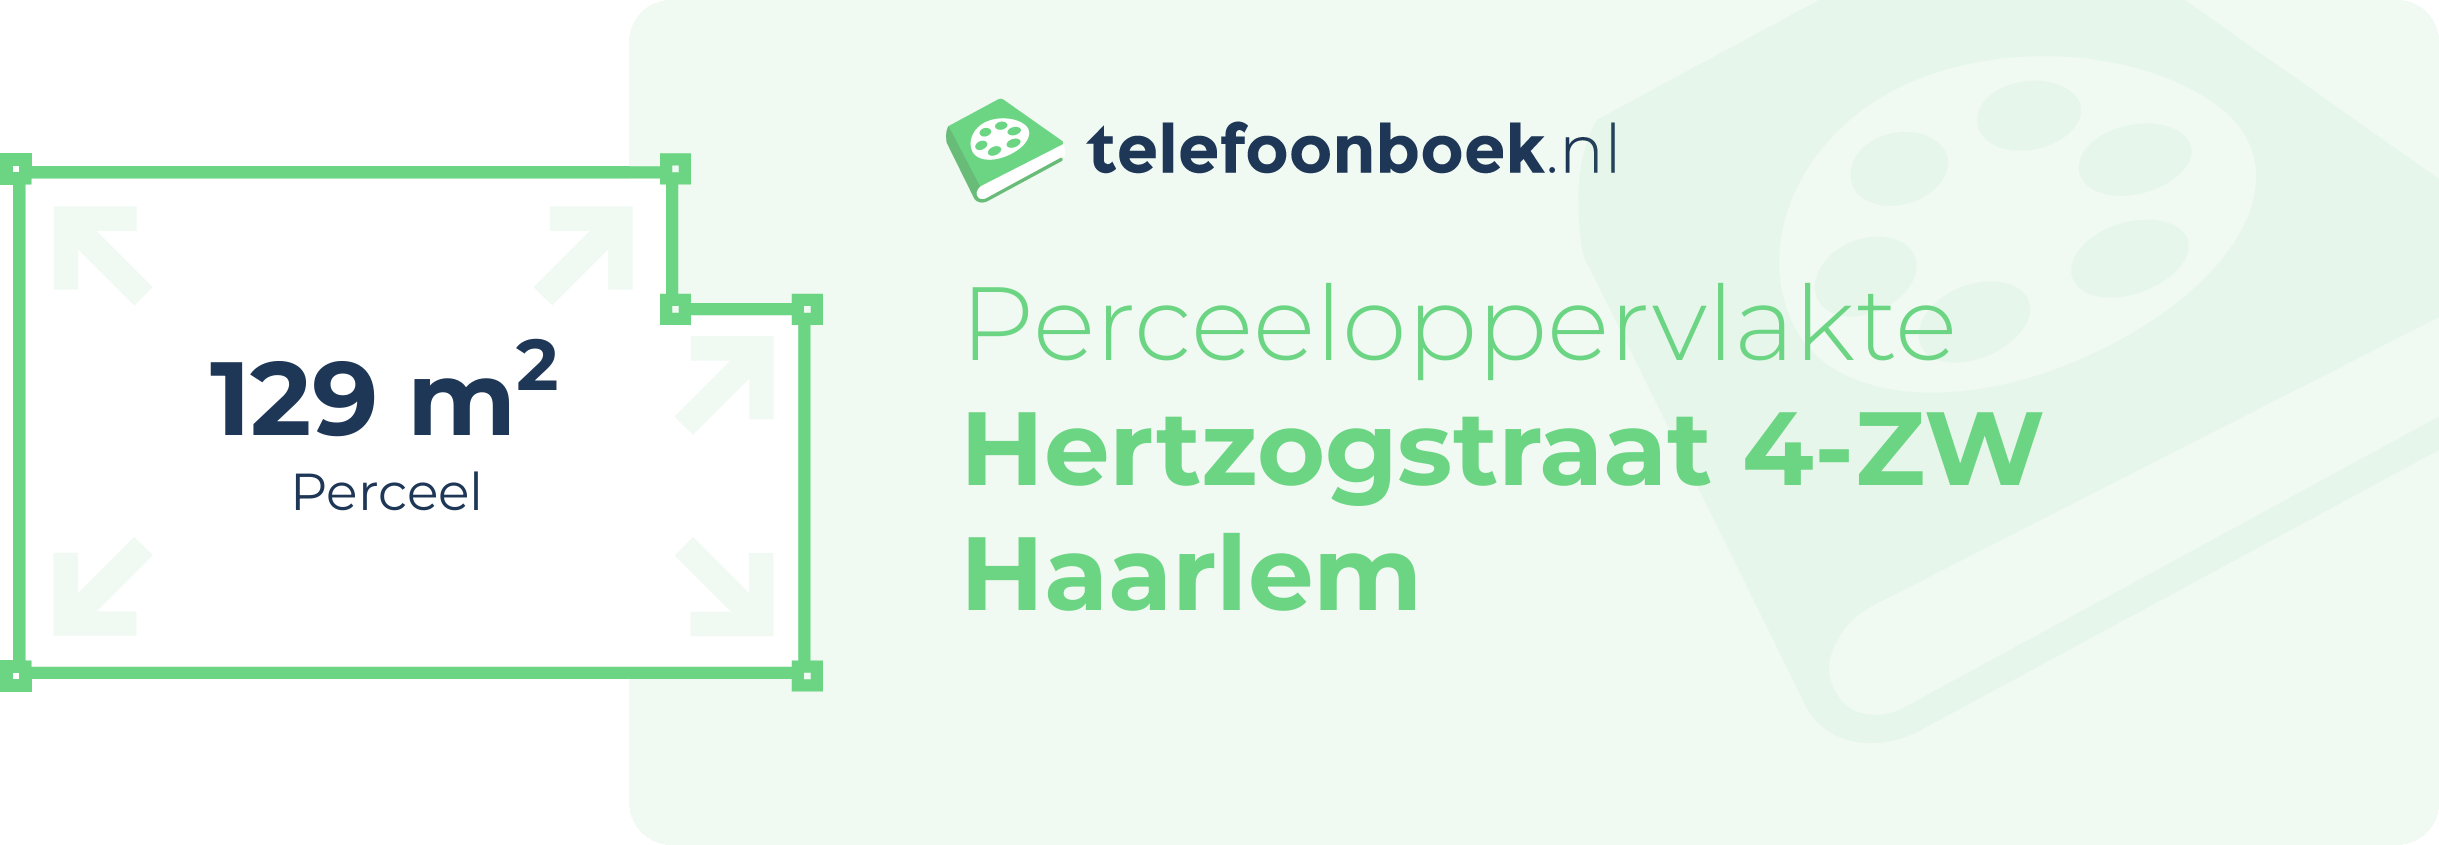 Perceeloppervlakte Hertzogstraat 4-ZW Haarlem